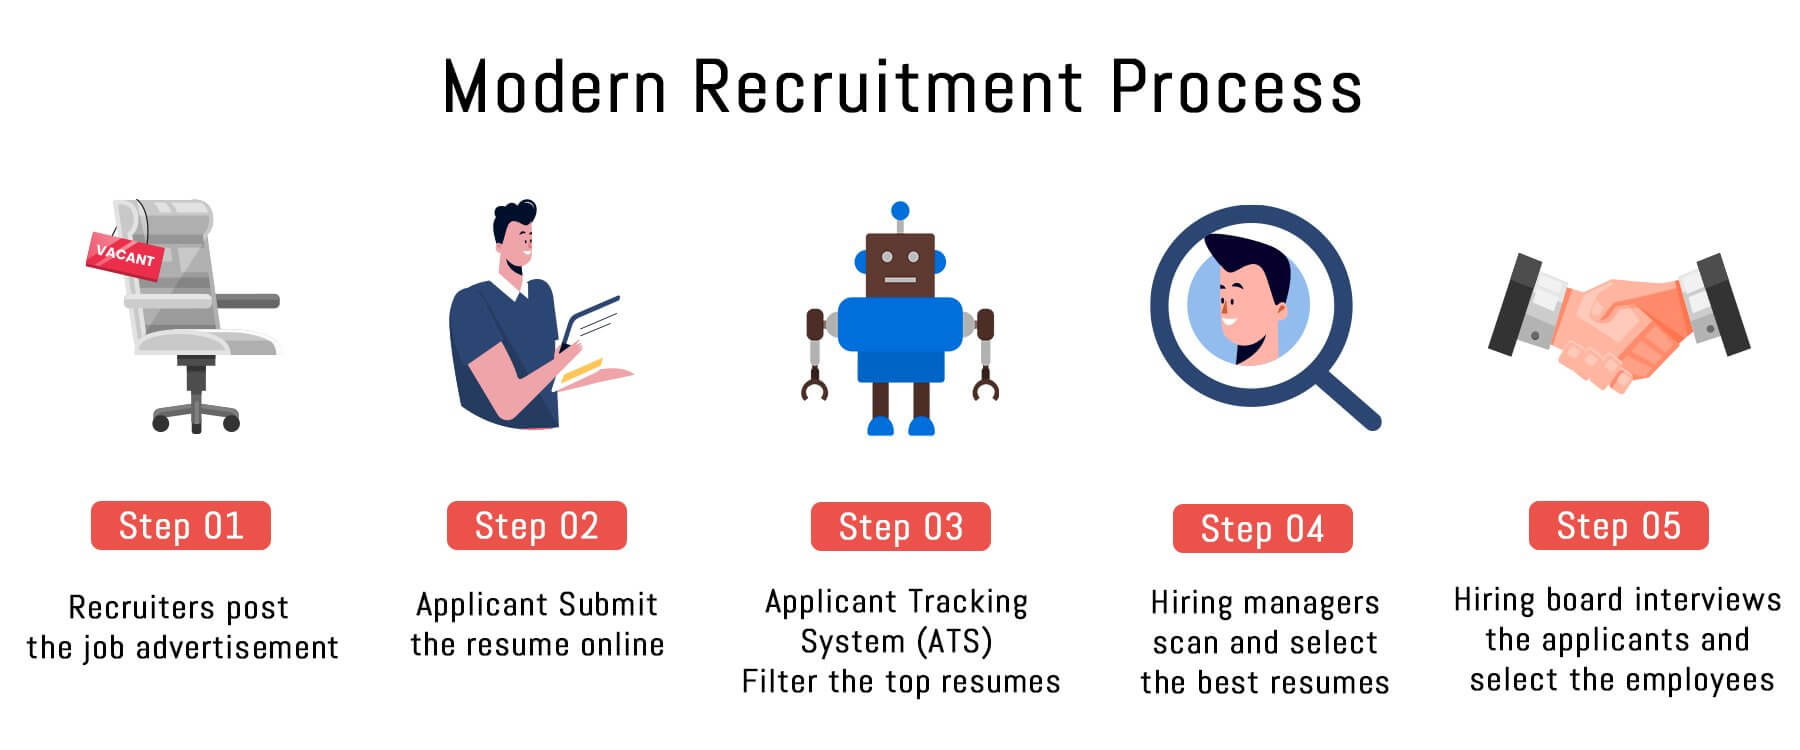 Modern recruitment process - bank teller